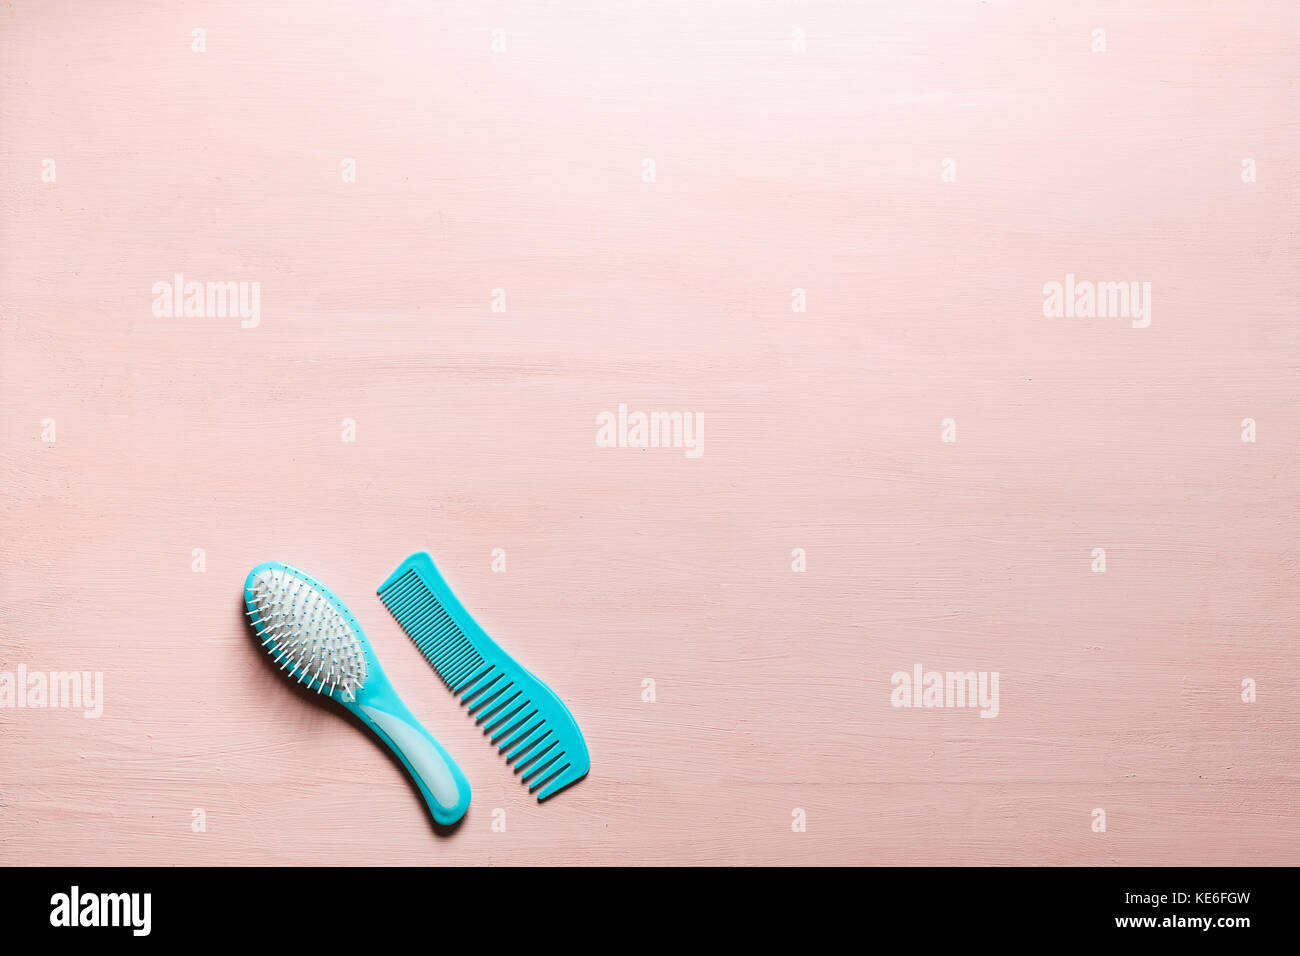 Zwei türkis Haar Kamm Kamm bürsten mit Griff für alle Arten, auf rosa Kopie Raum Hintergrund isoliert. Minimalistisch feminine Flach. Stockfoto